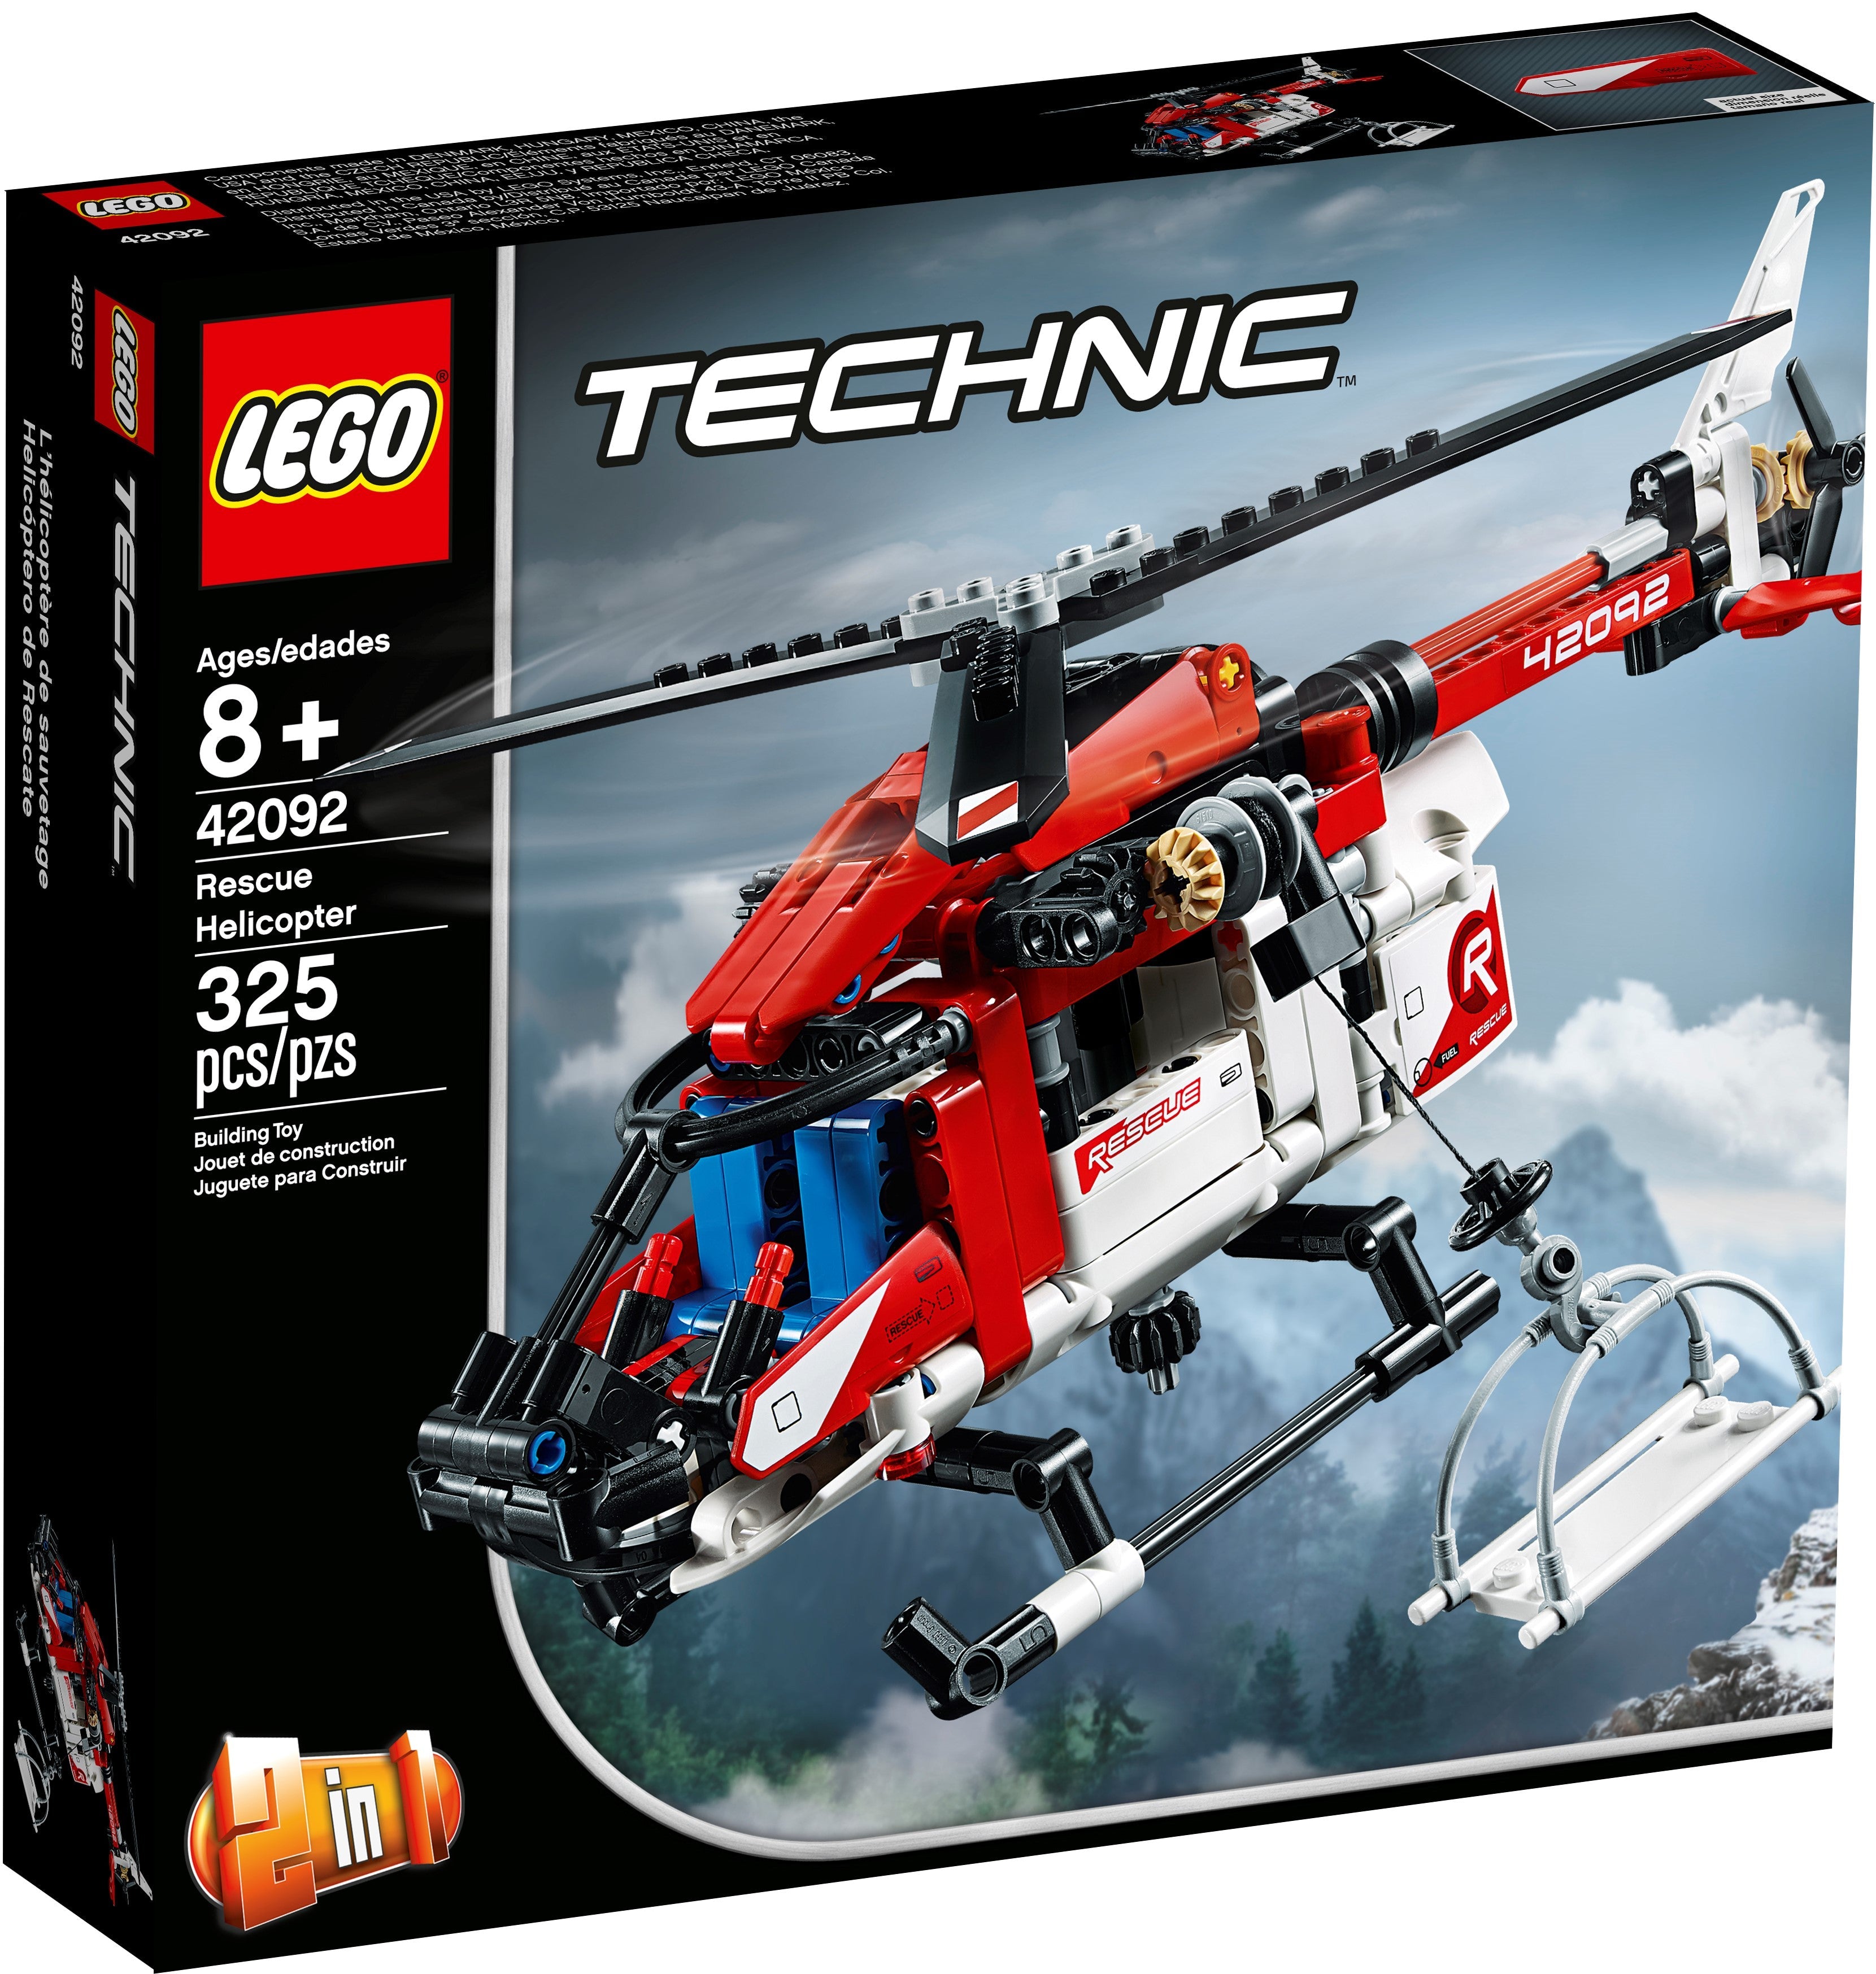 LEGO Technic Rettungshubschrauber (42092) - im GOLDSTIEN.SHOP verfügbar mit Gratisversand ab Schweizer Lager! (5702016369571)